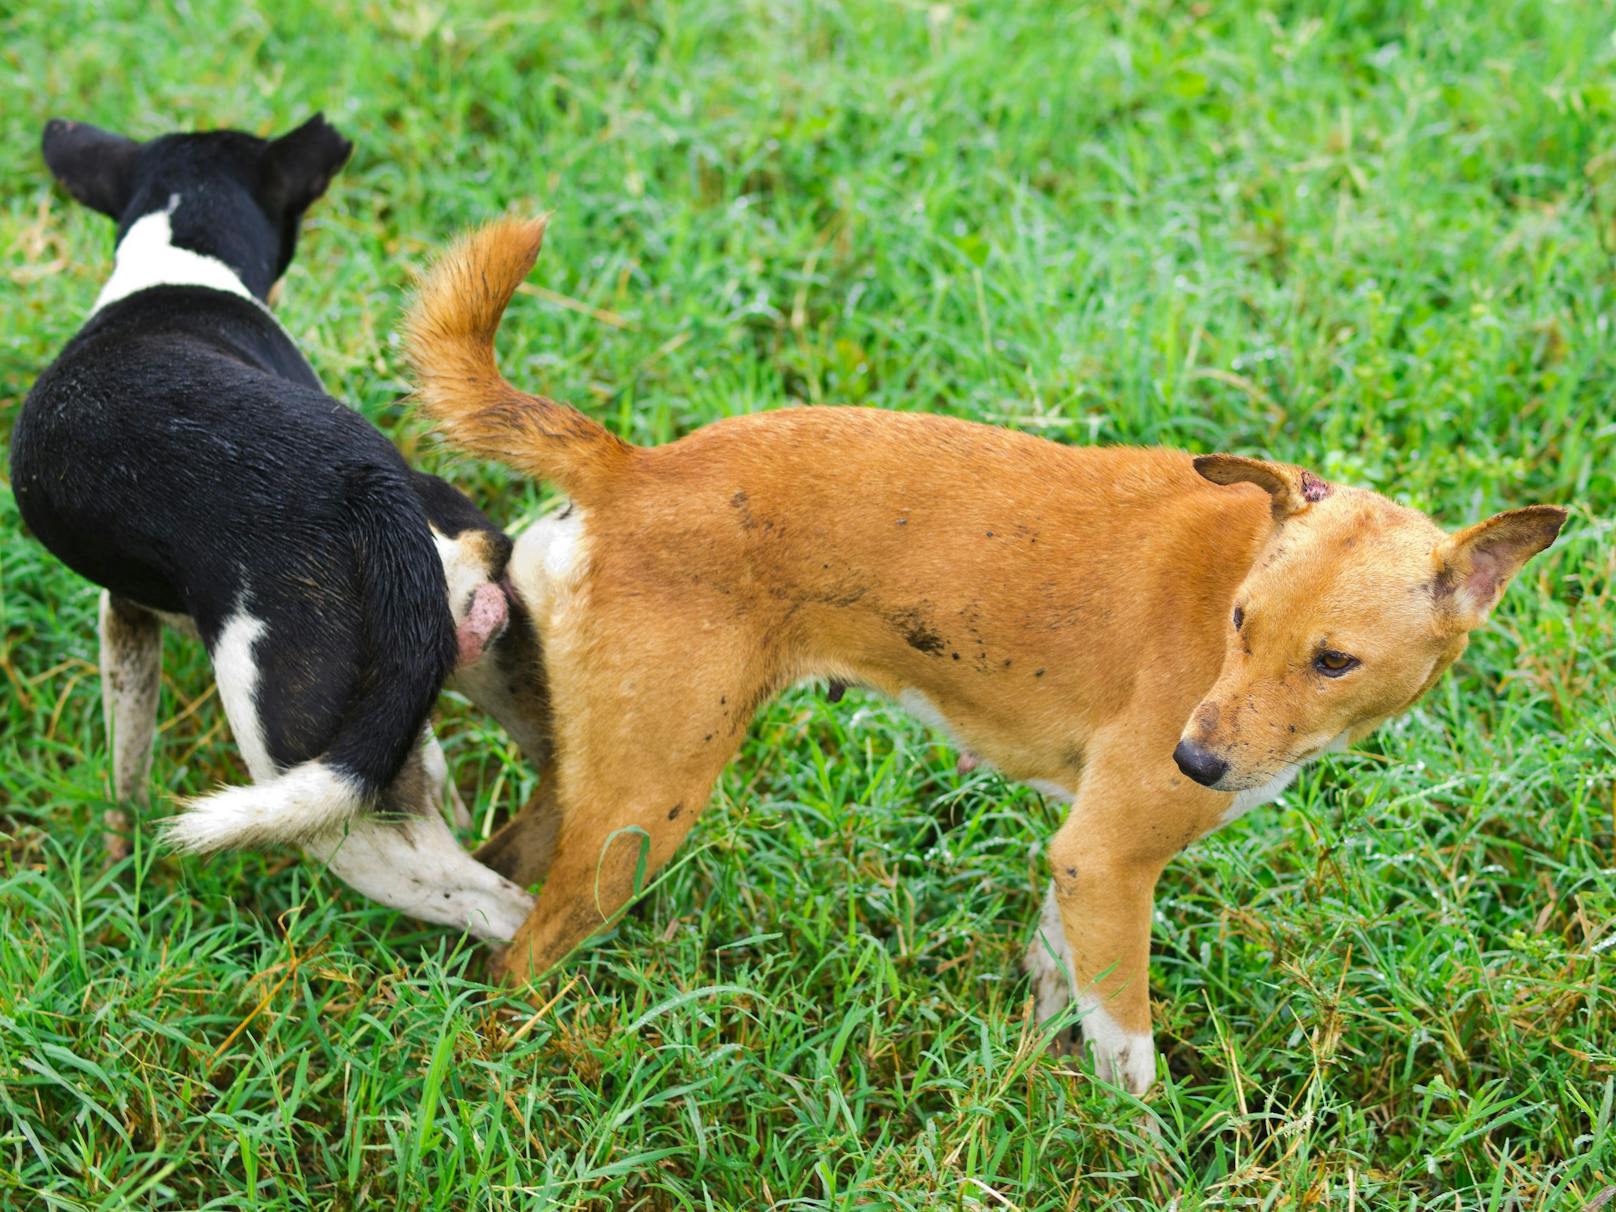 "Hängende" Hunde sollte man niemals gewaltsam lösen, da Verletzungsgefahr für beide besteht. 